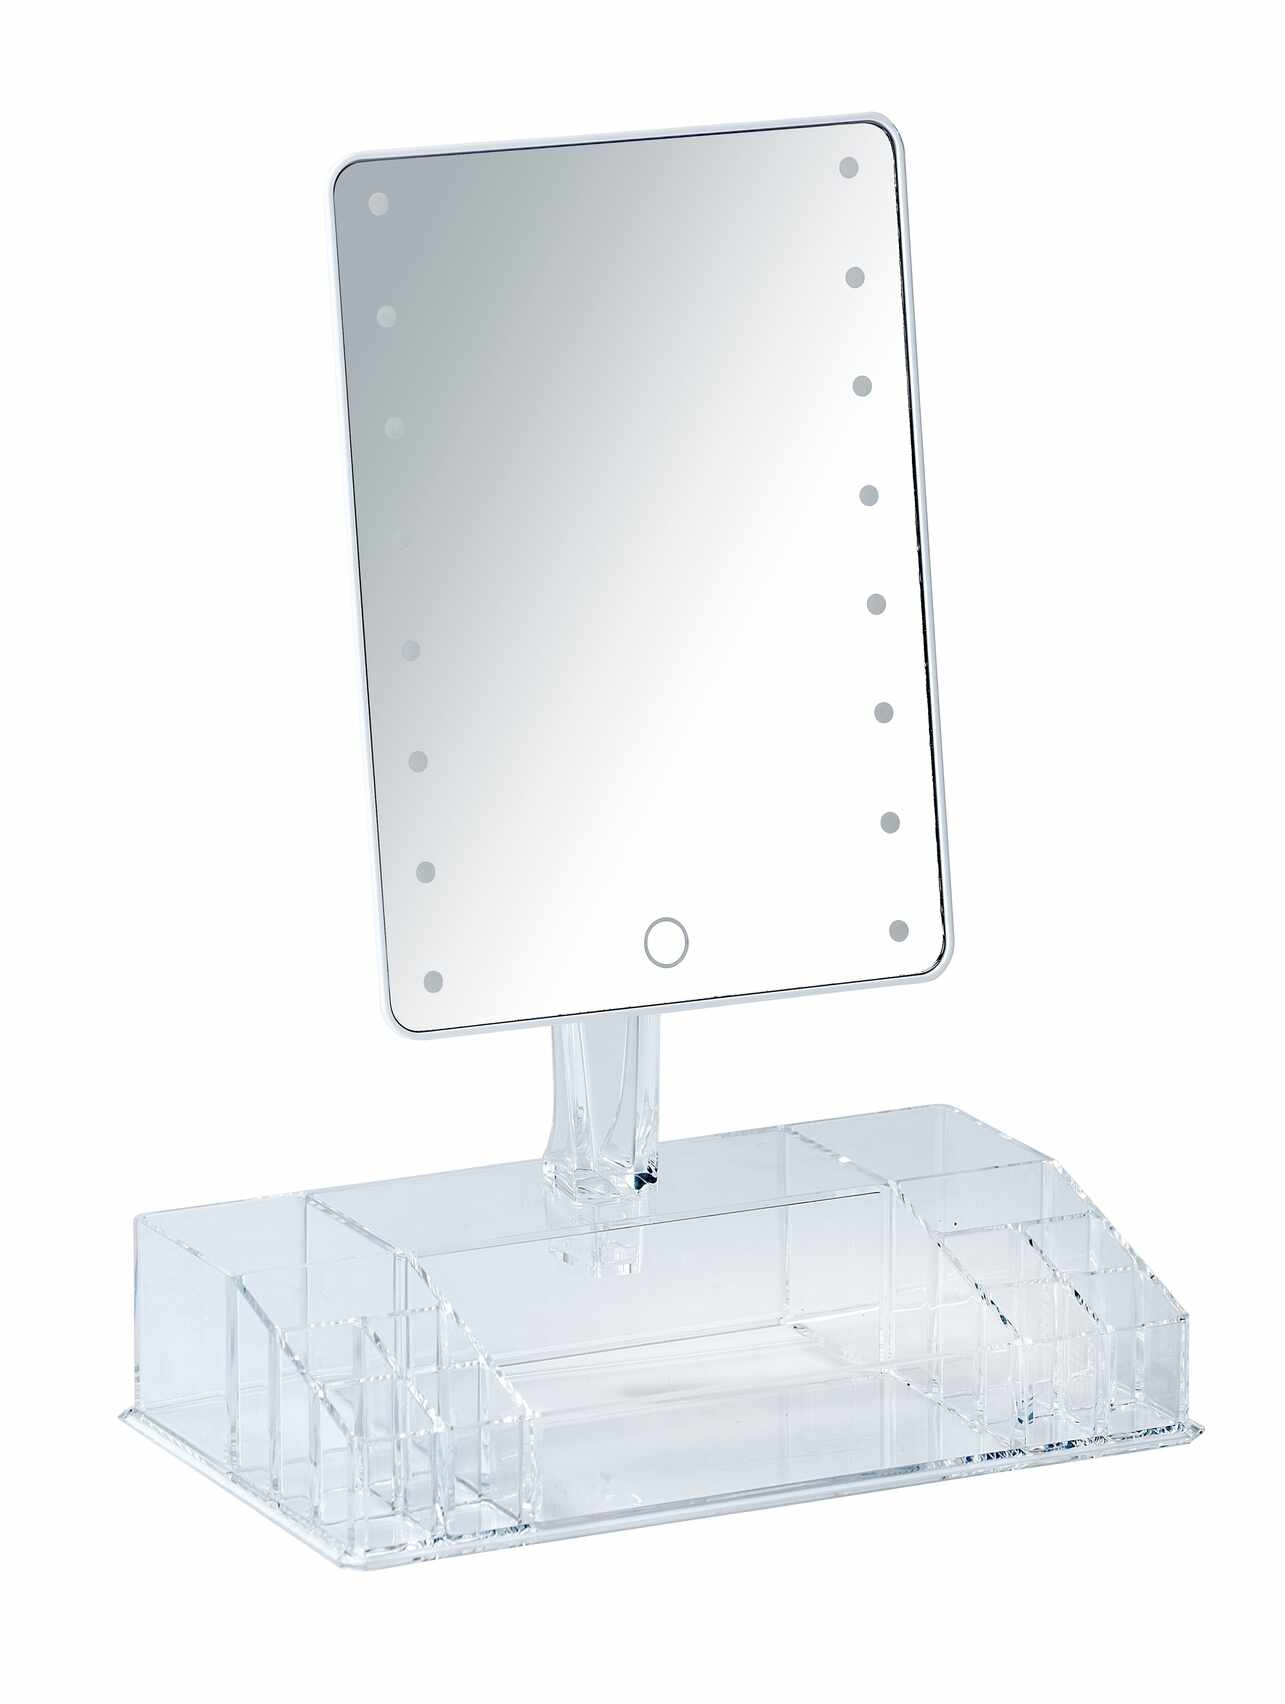 Oglinda cosmetica de masa, cu LED si organizator din plastic, Farnese Transparent, L27xl16xH36 cm